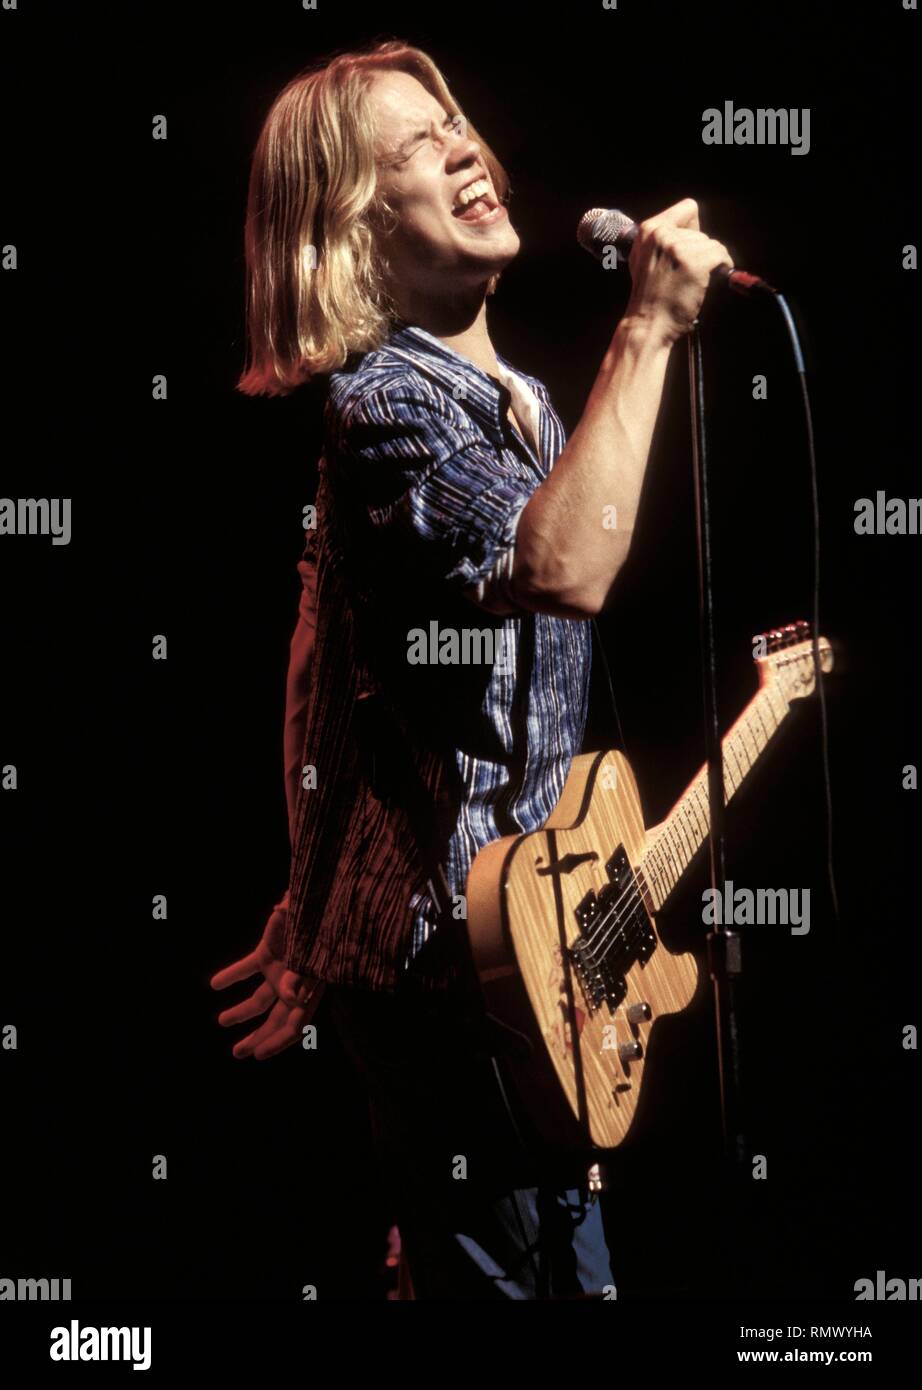 Grammy Award-winning Blues und Gospel Sänger, Jonny Lang, dargestellt auf der Bühne während einer "live"-Konzert aussehen. Stockfoto